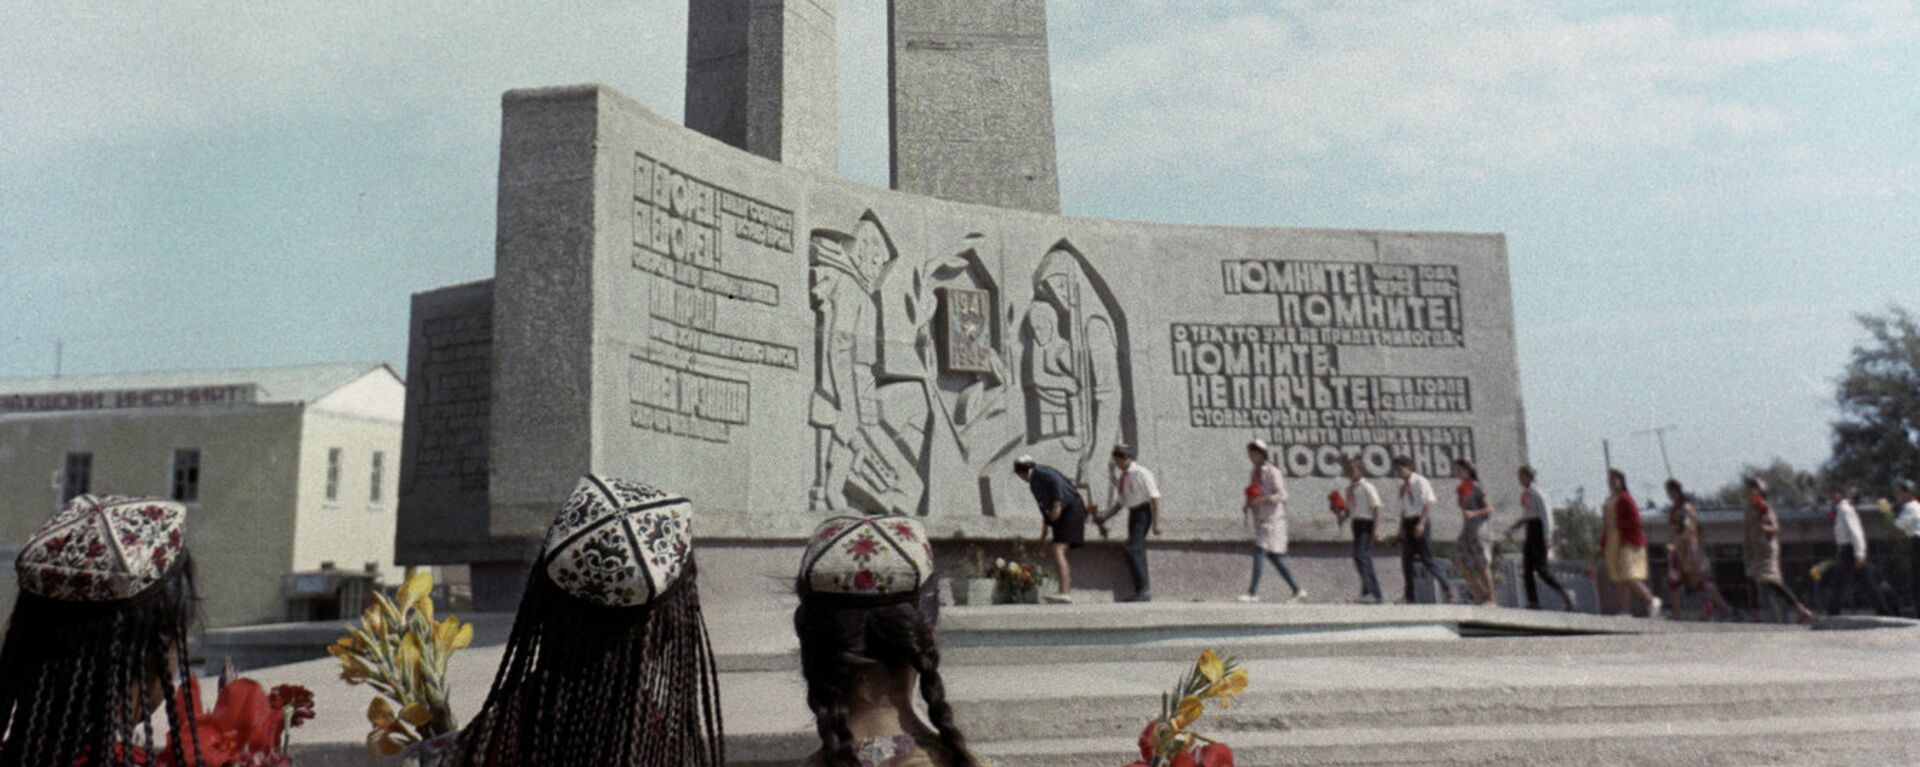 Памятник воинам ВОВ - Sputnik Тоҷикистон, 1920, 01.02.2021